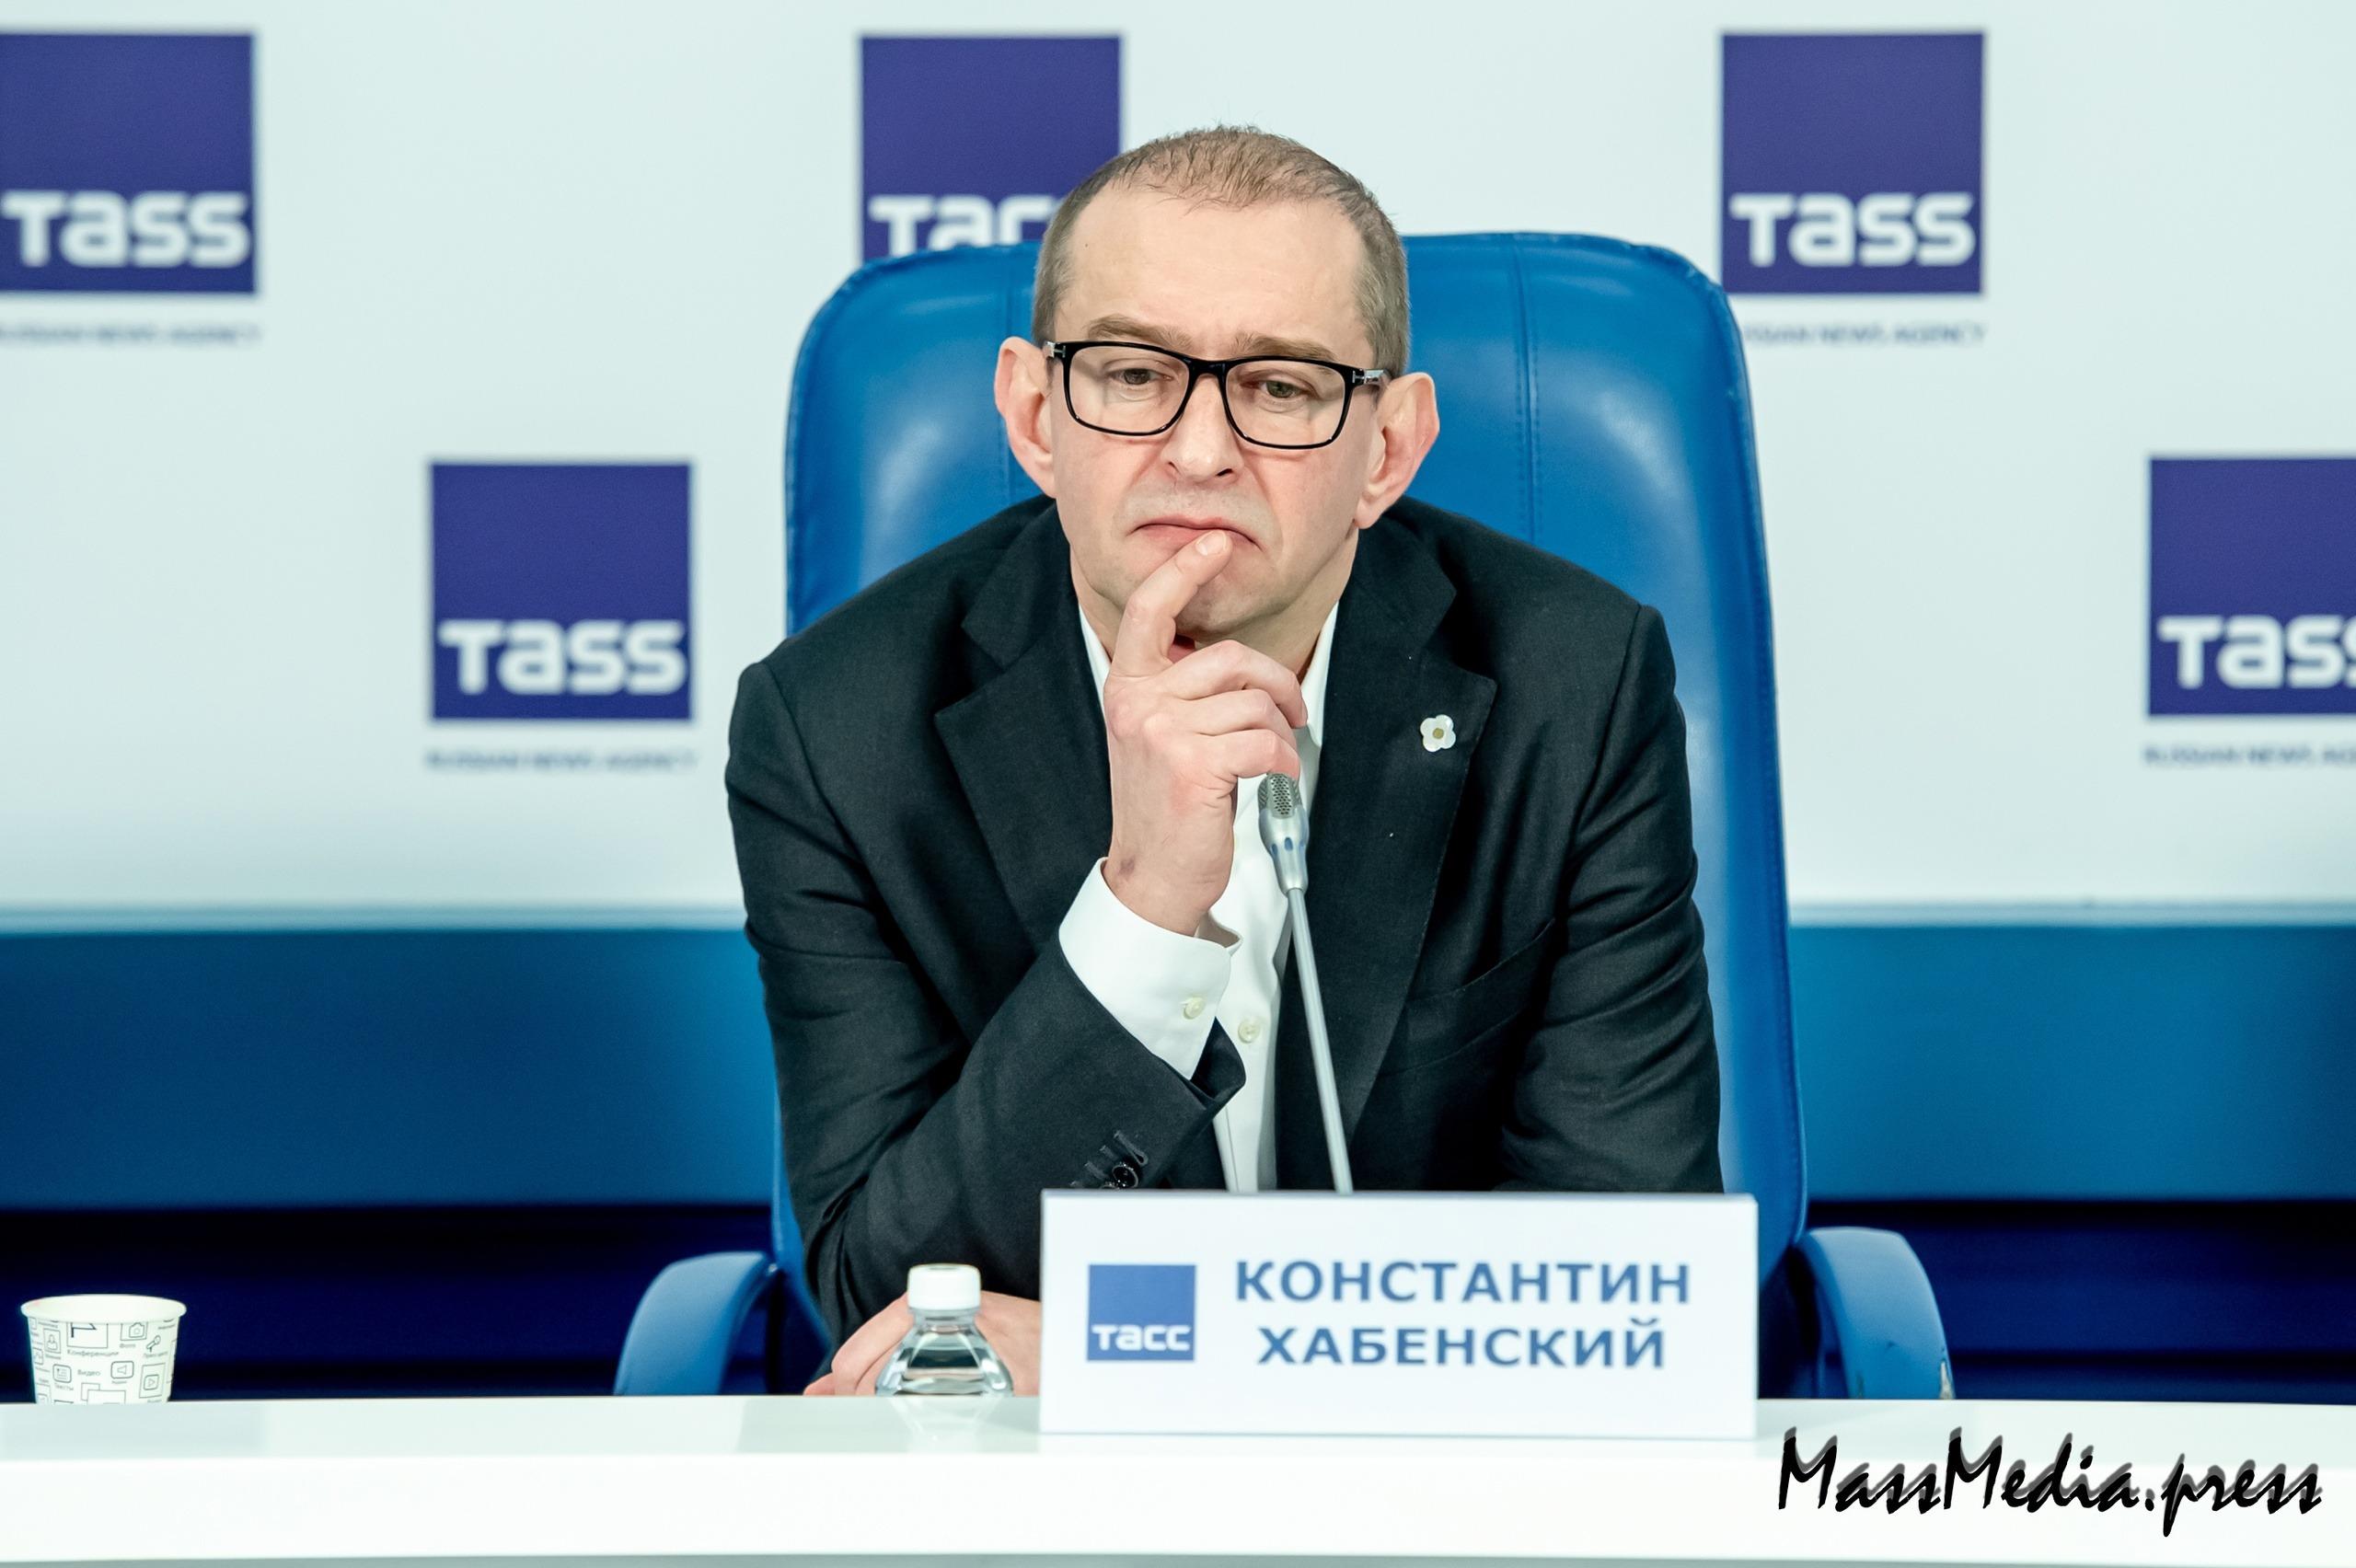 В ТАССе прошла пресс-конференция руководителя МХТ - Константина Хабенского